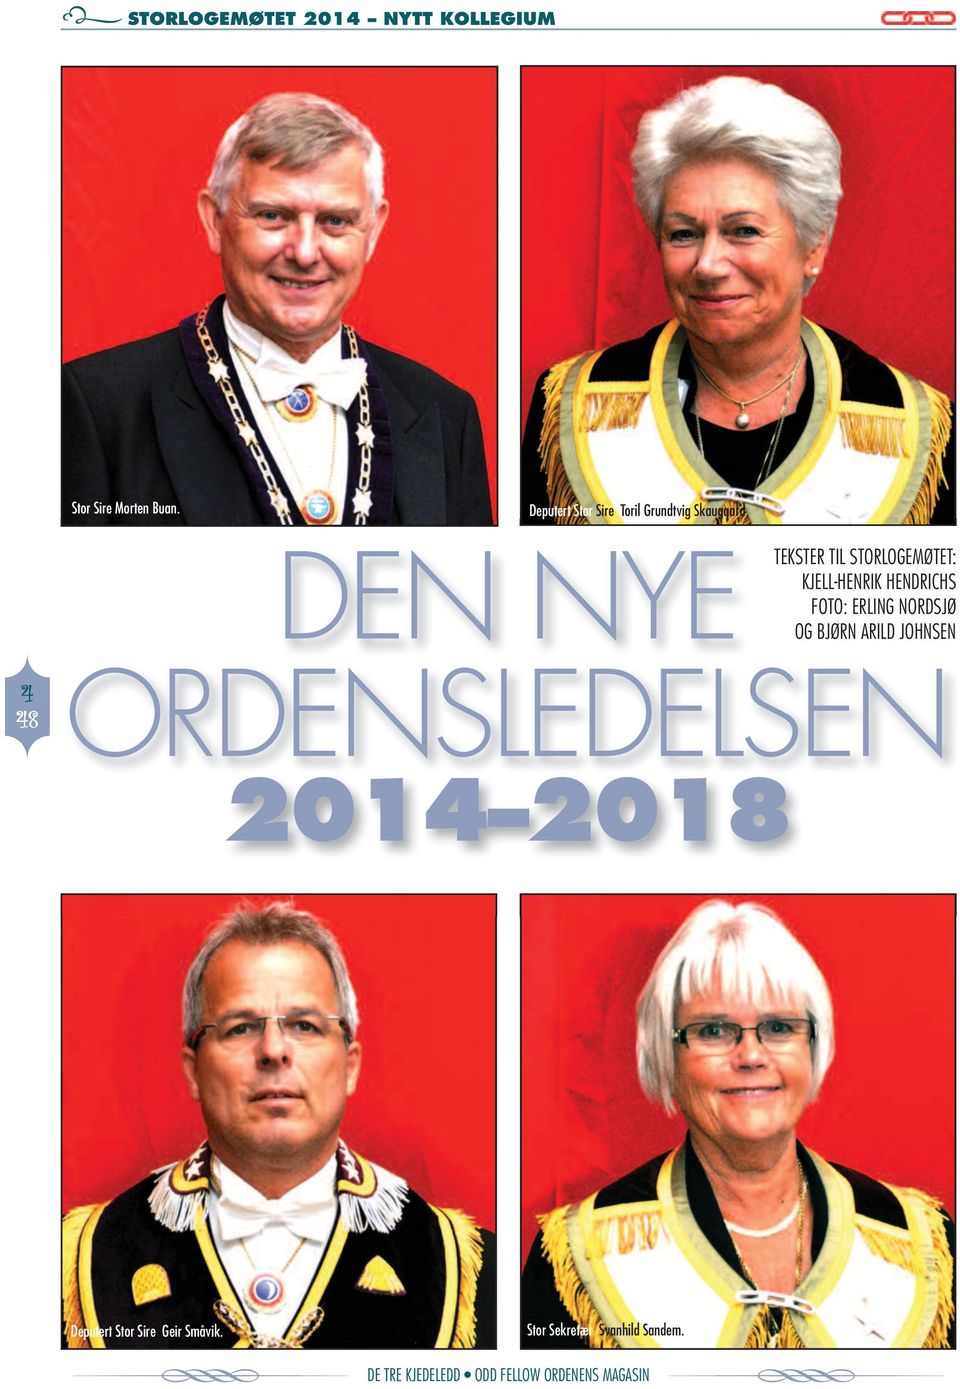 2014 2018 tekster til Storlogemøtet: KJell-HeNriK HeNDricHS Foto: erling